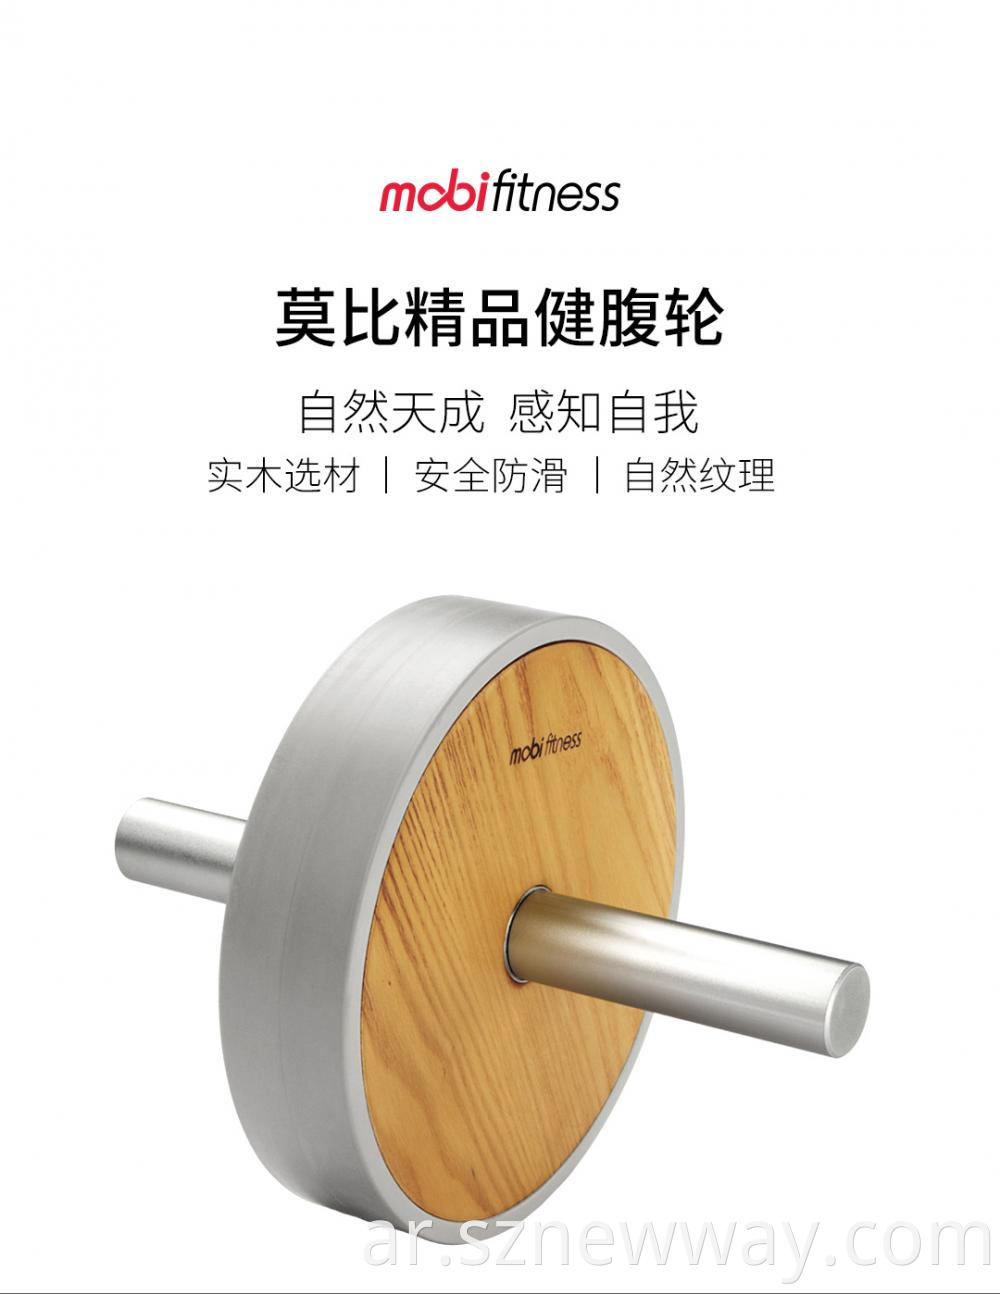 Mobifitness Fitness Roller